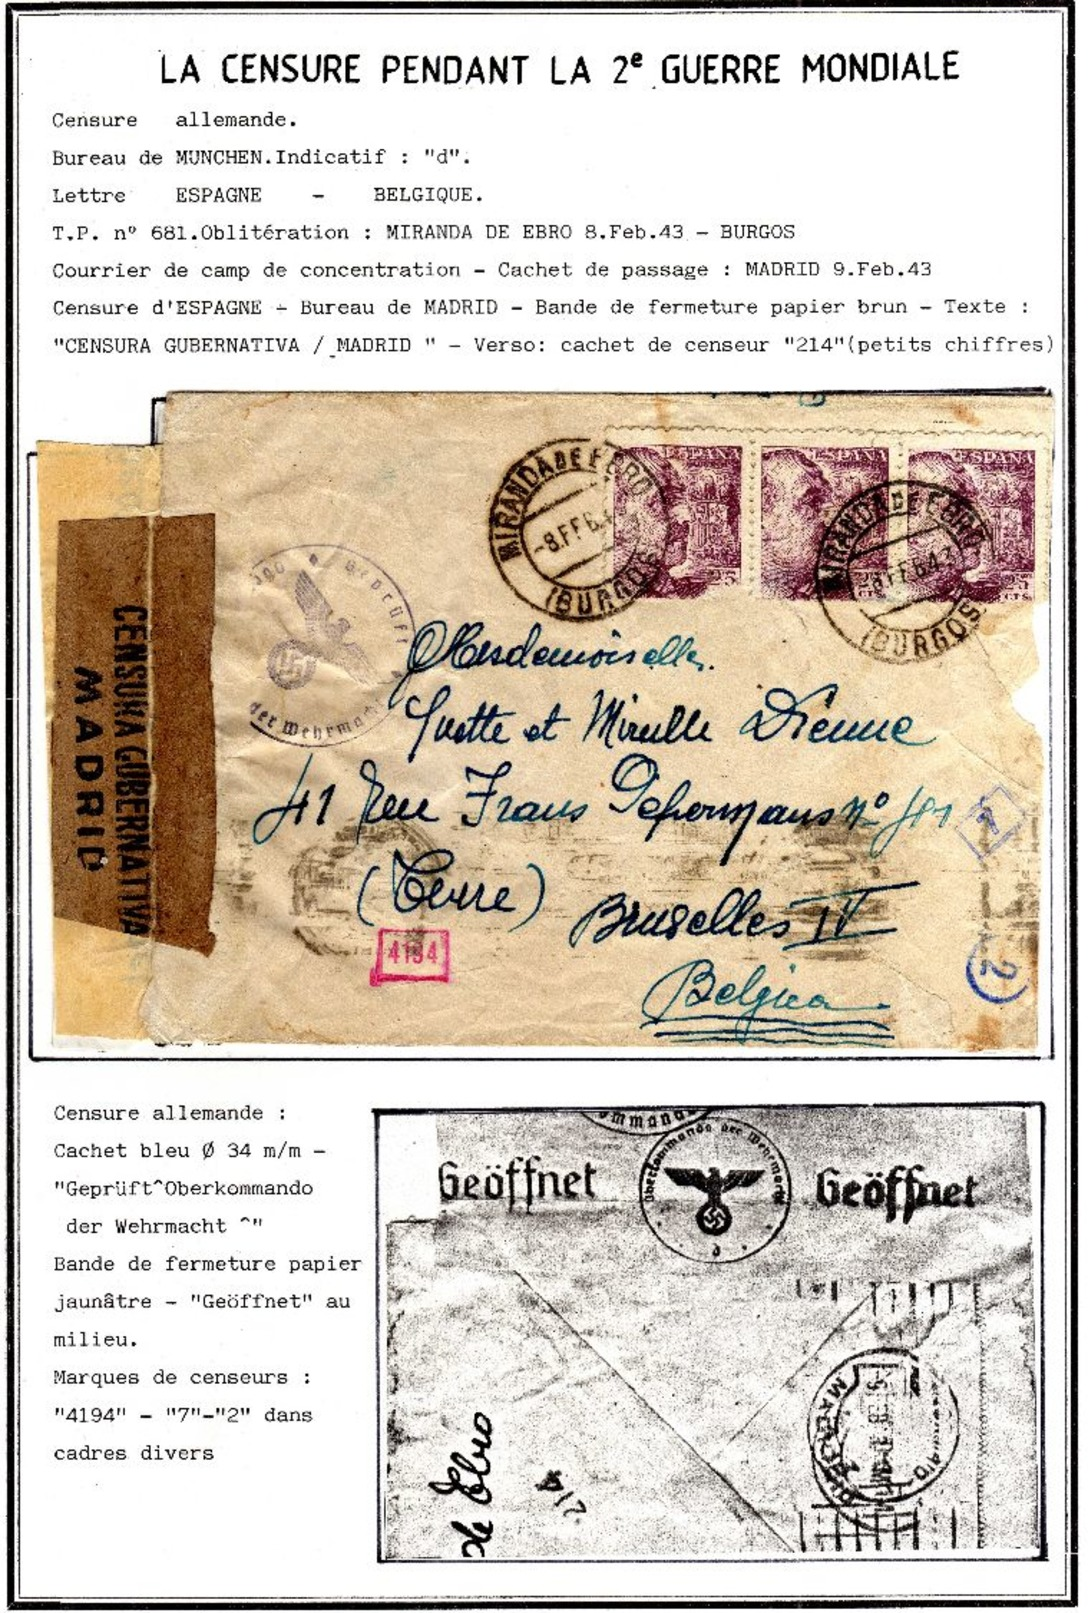 Camp De Concentration De "MIRANDA De EBRO (Borgos)" 11 Documents Du 24/09/42 Au 21/10/43 Exceptionnel RR 11 Scans 675€ - Guerre 40-45 (Lettres & Documents)